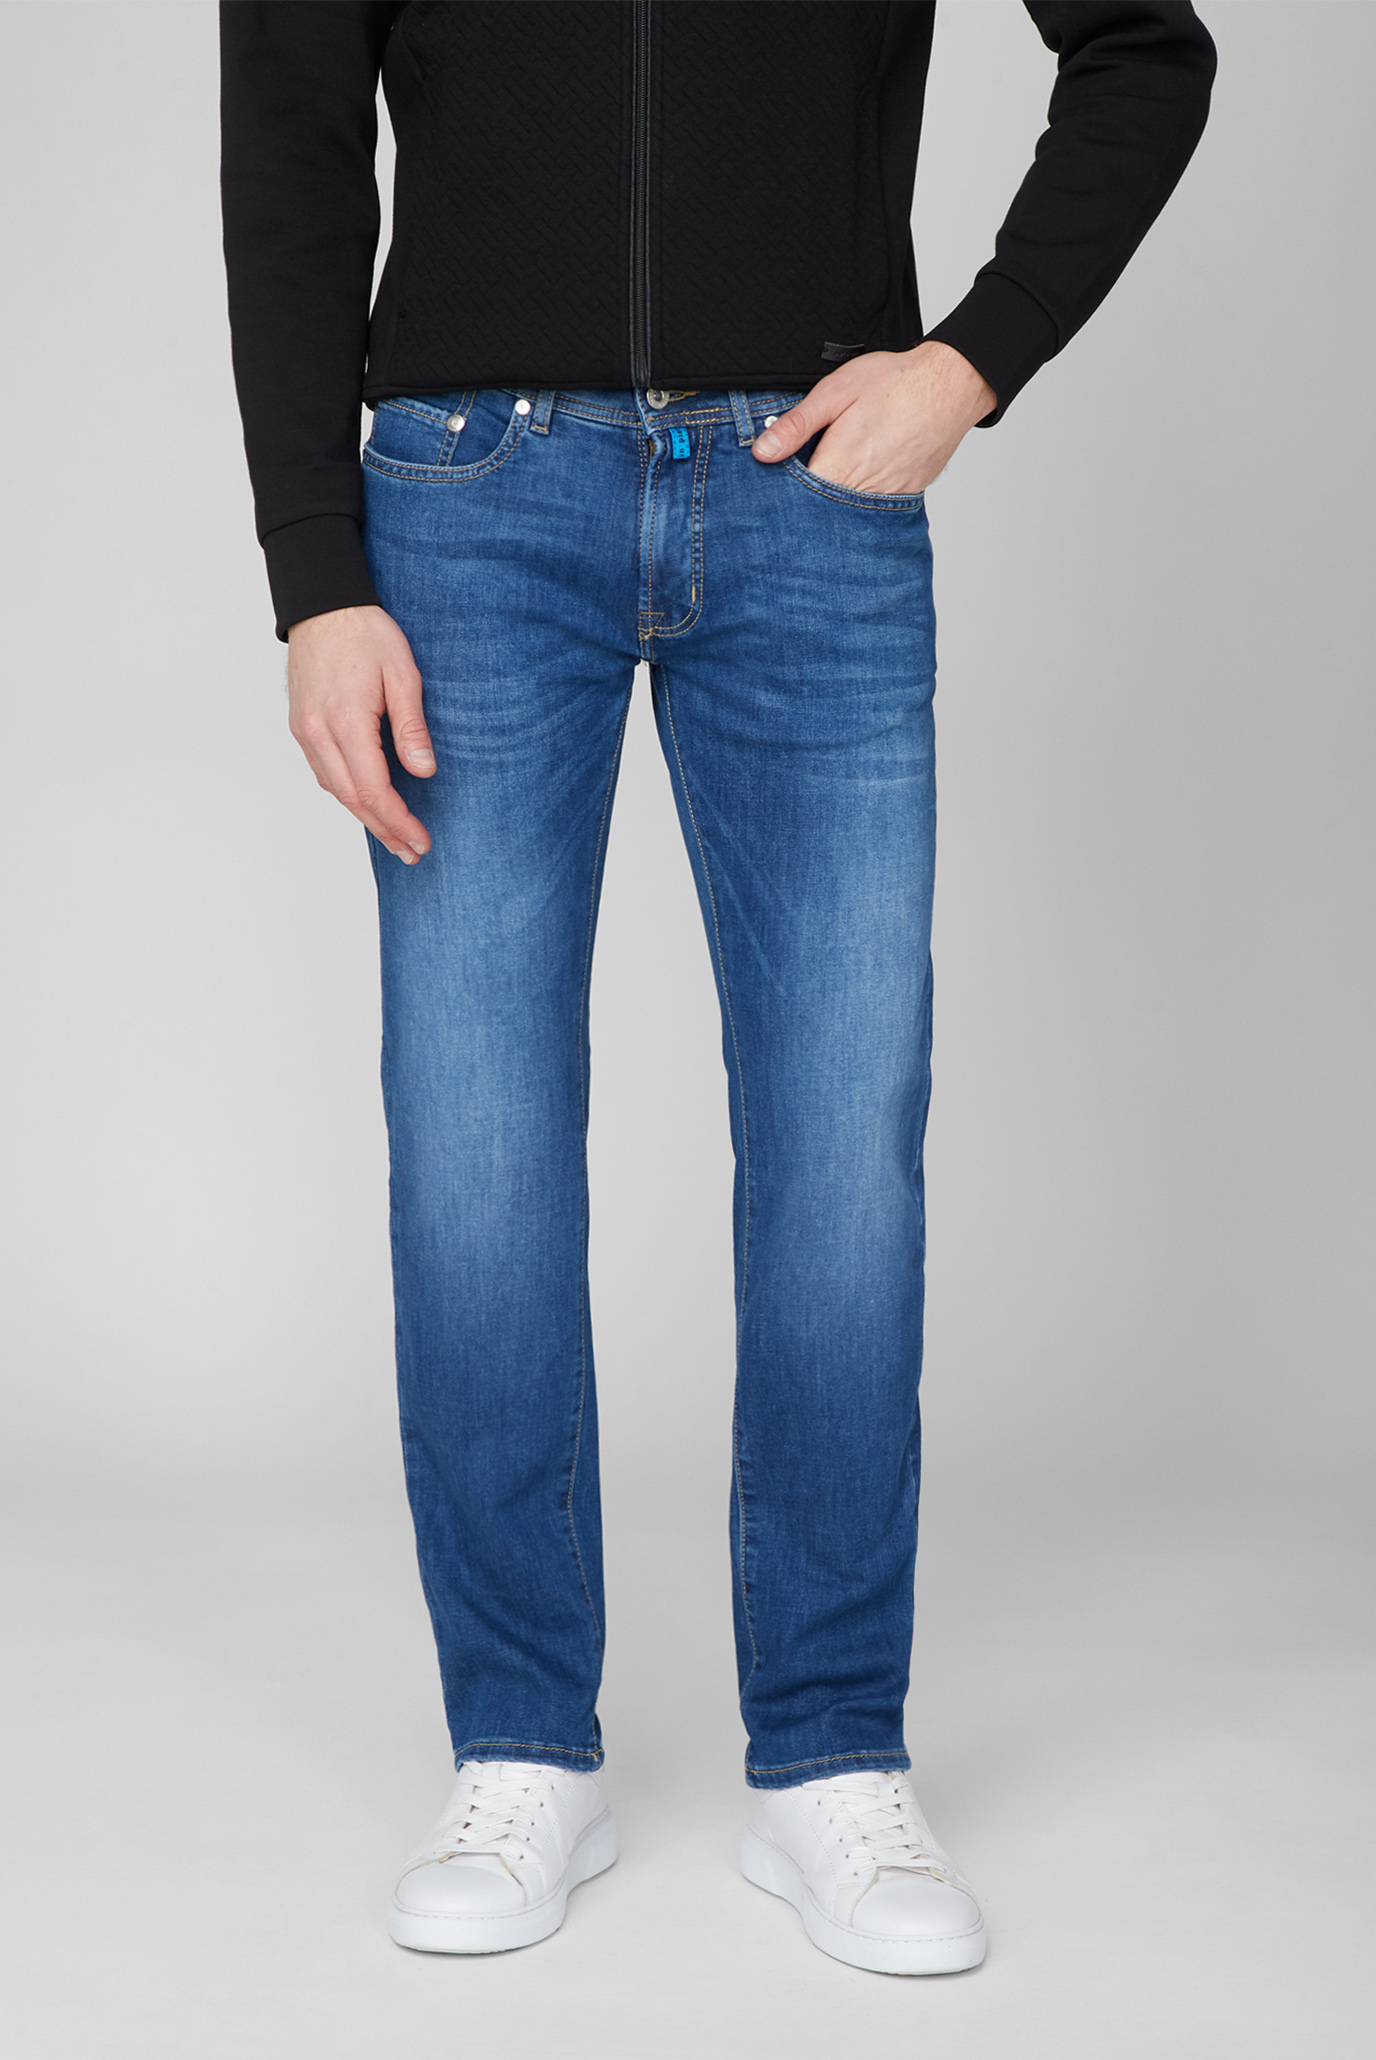 Мужские синие джинсы 1